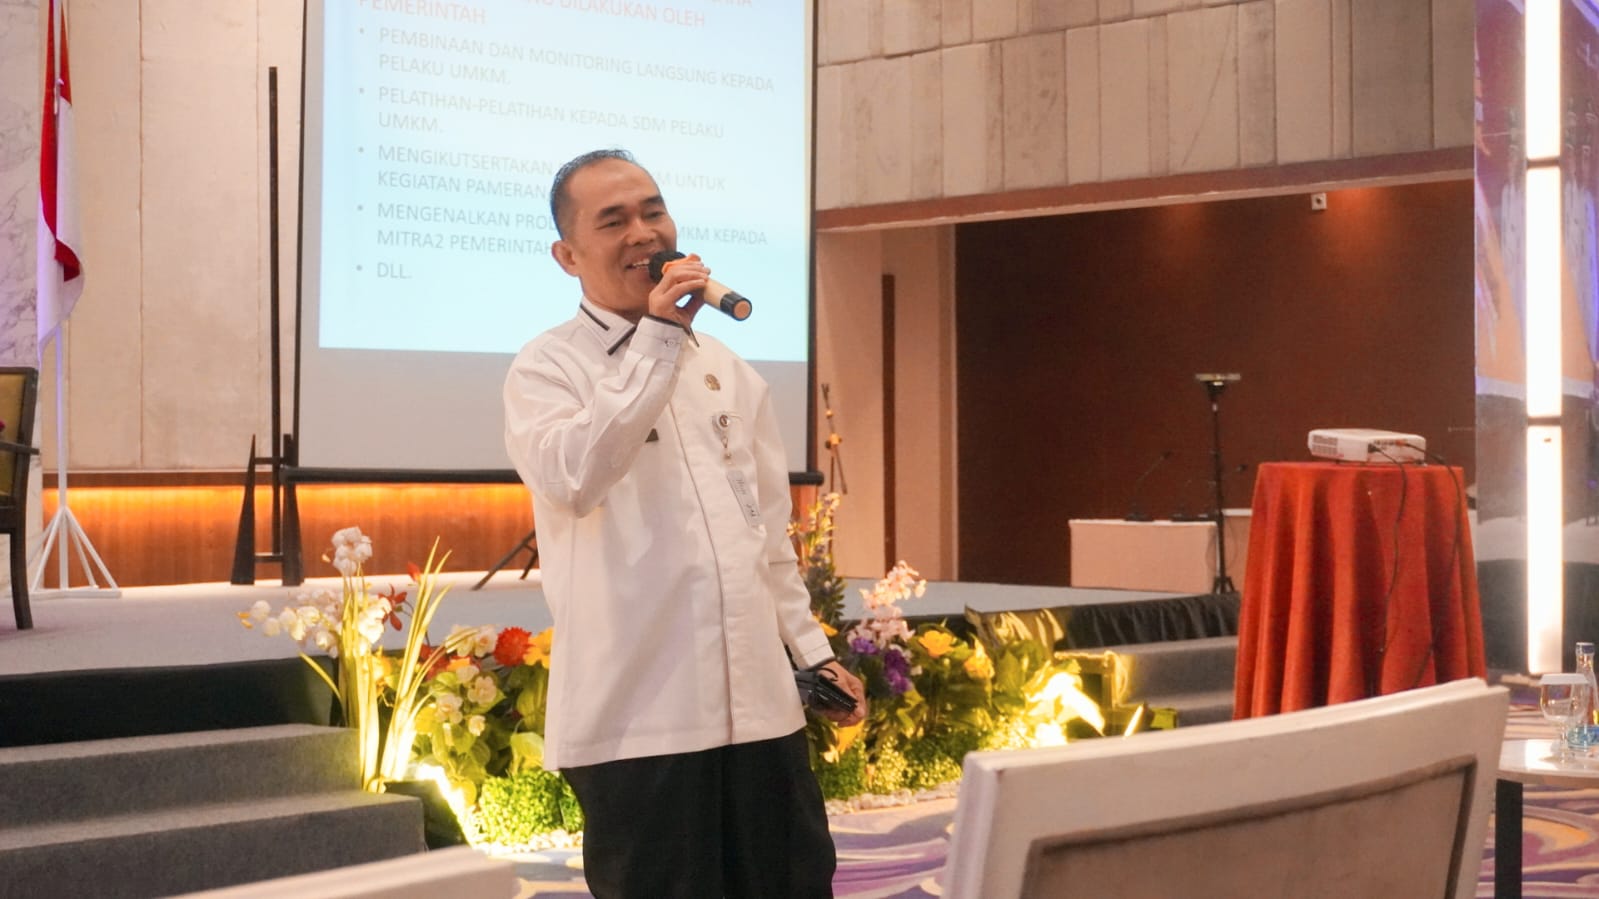 Program Prioritas Pj Walikota, Pelaku UMKM Kini Dapat Subsidi Bunga Pinjaman Dari Pemko Pekanbaru